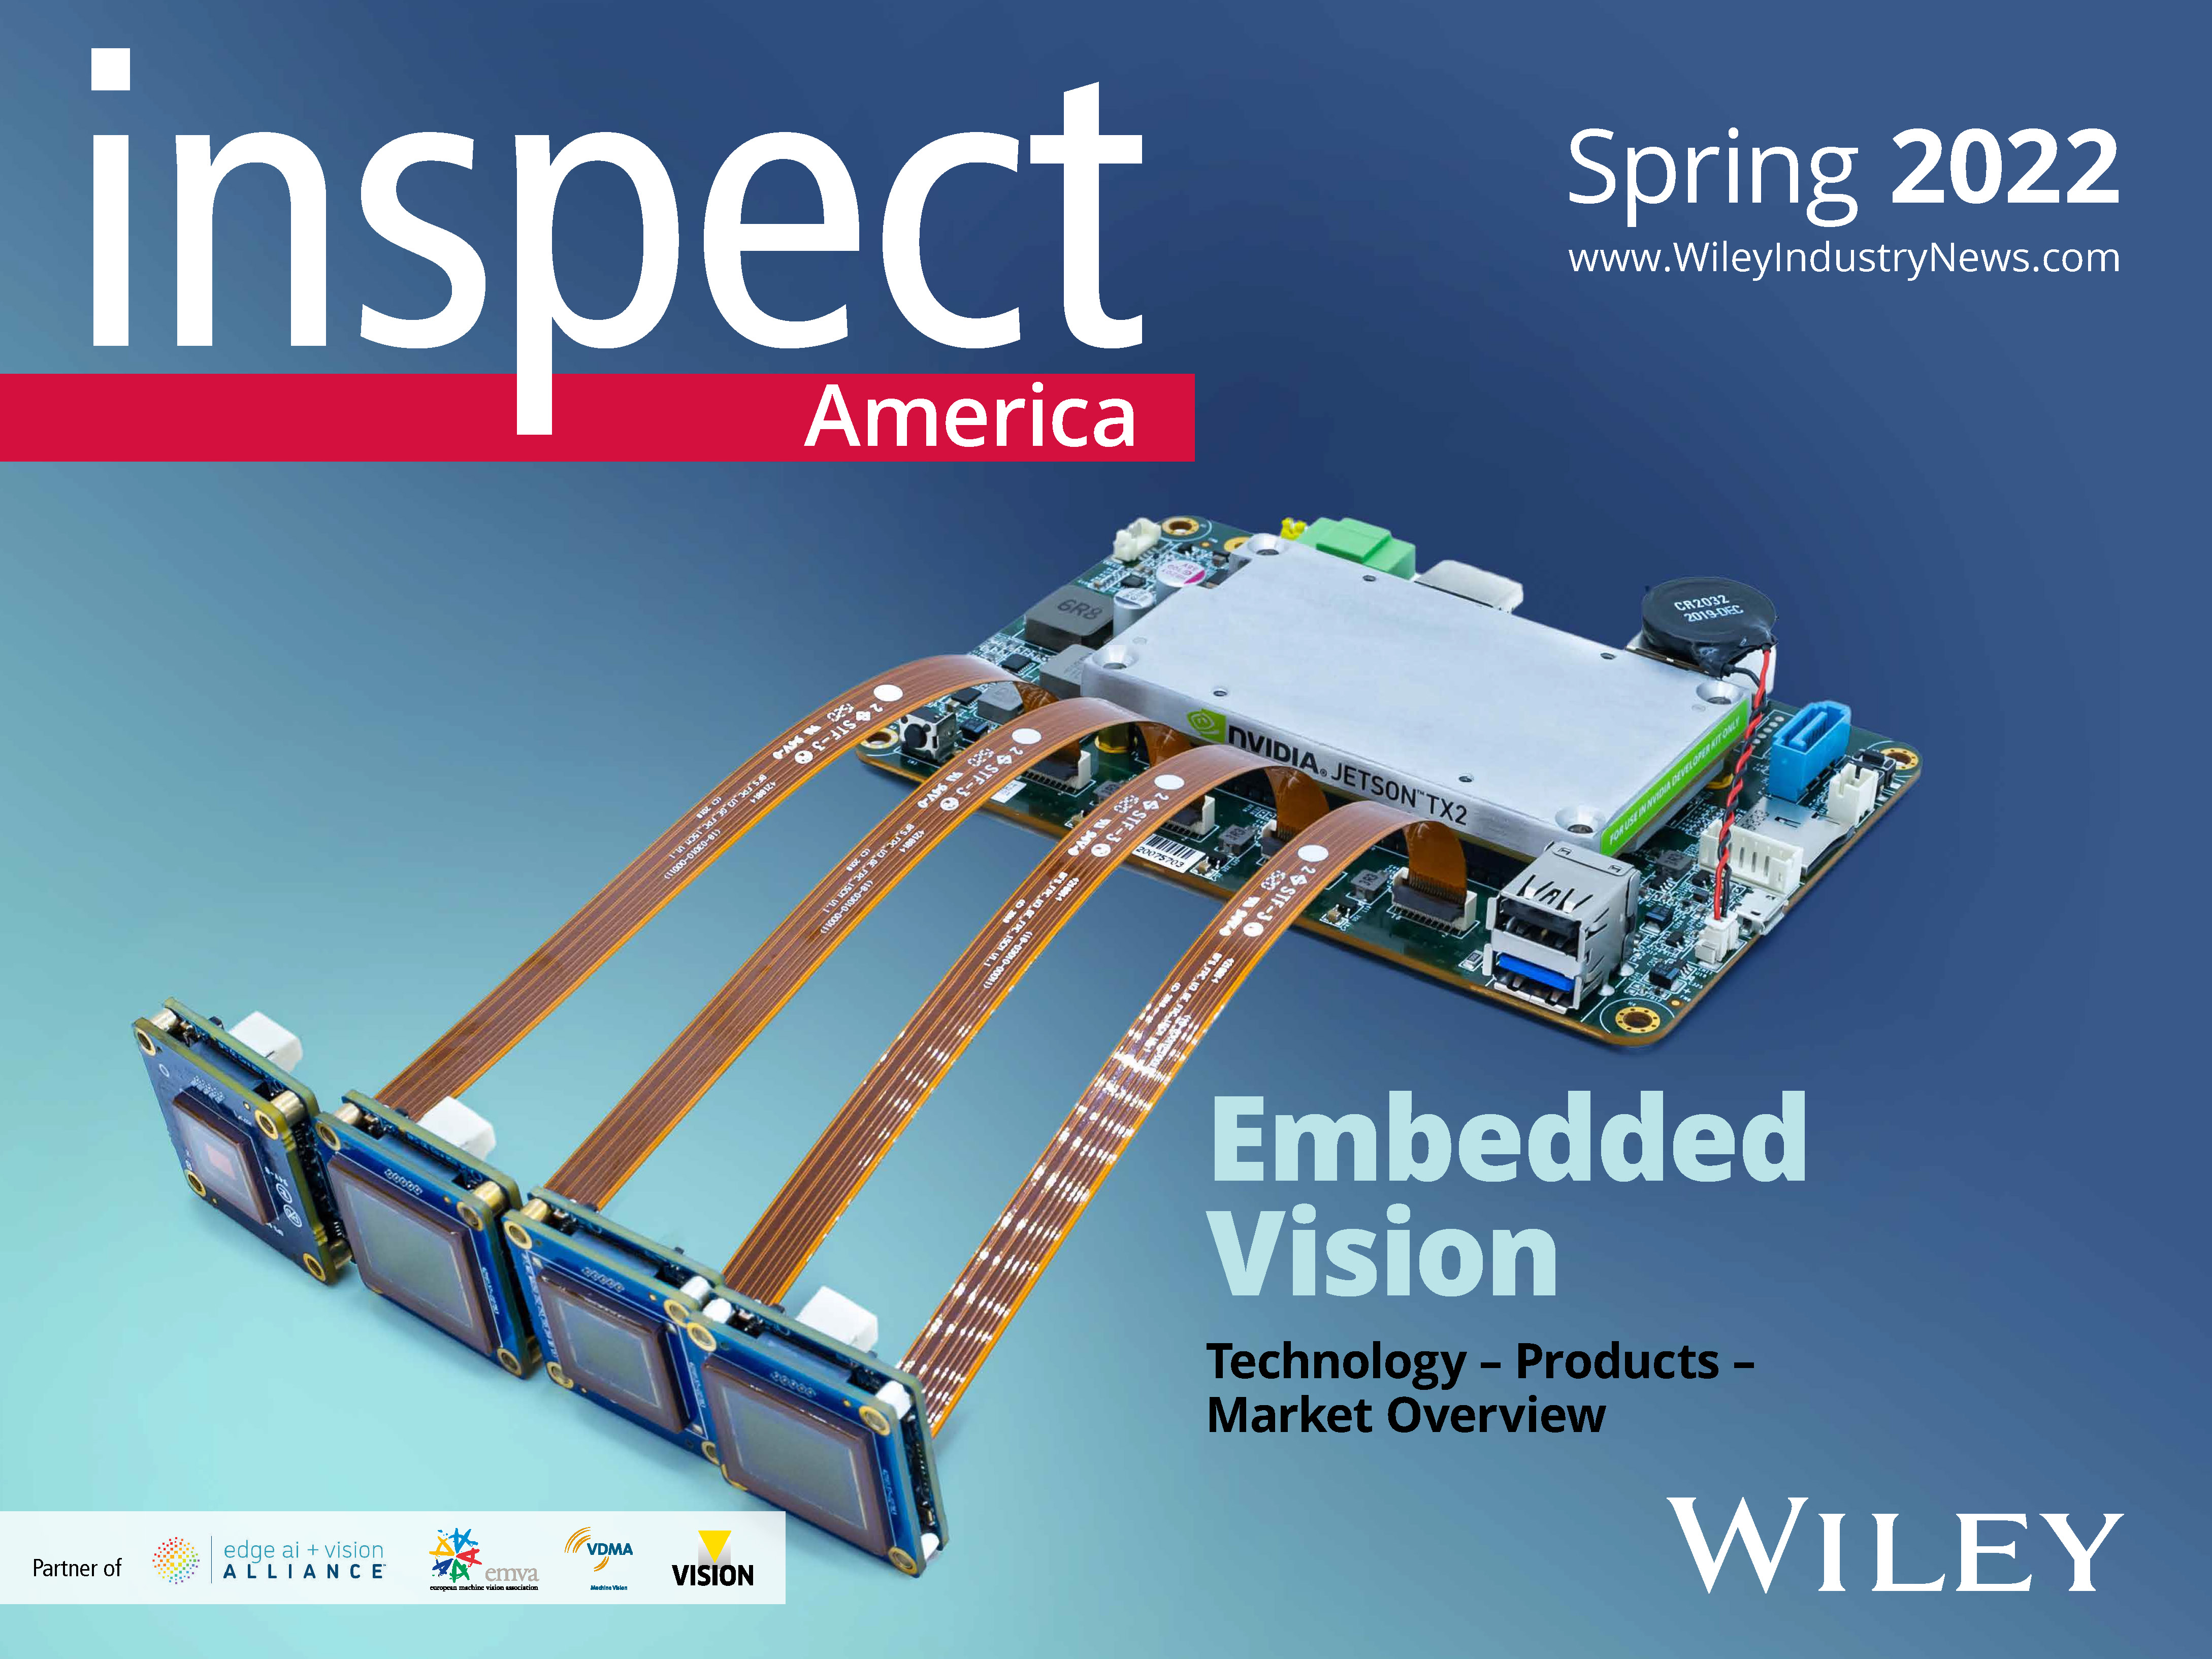 Die erste Ausgabe der inspect America ist erschienen und dreht sich um das Thema Embedded Vision und erscheint anlässlich des Embedded Vision Summit